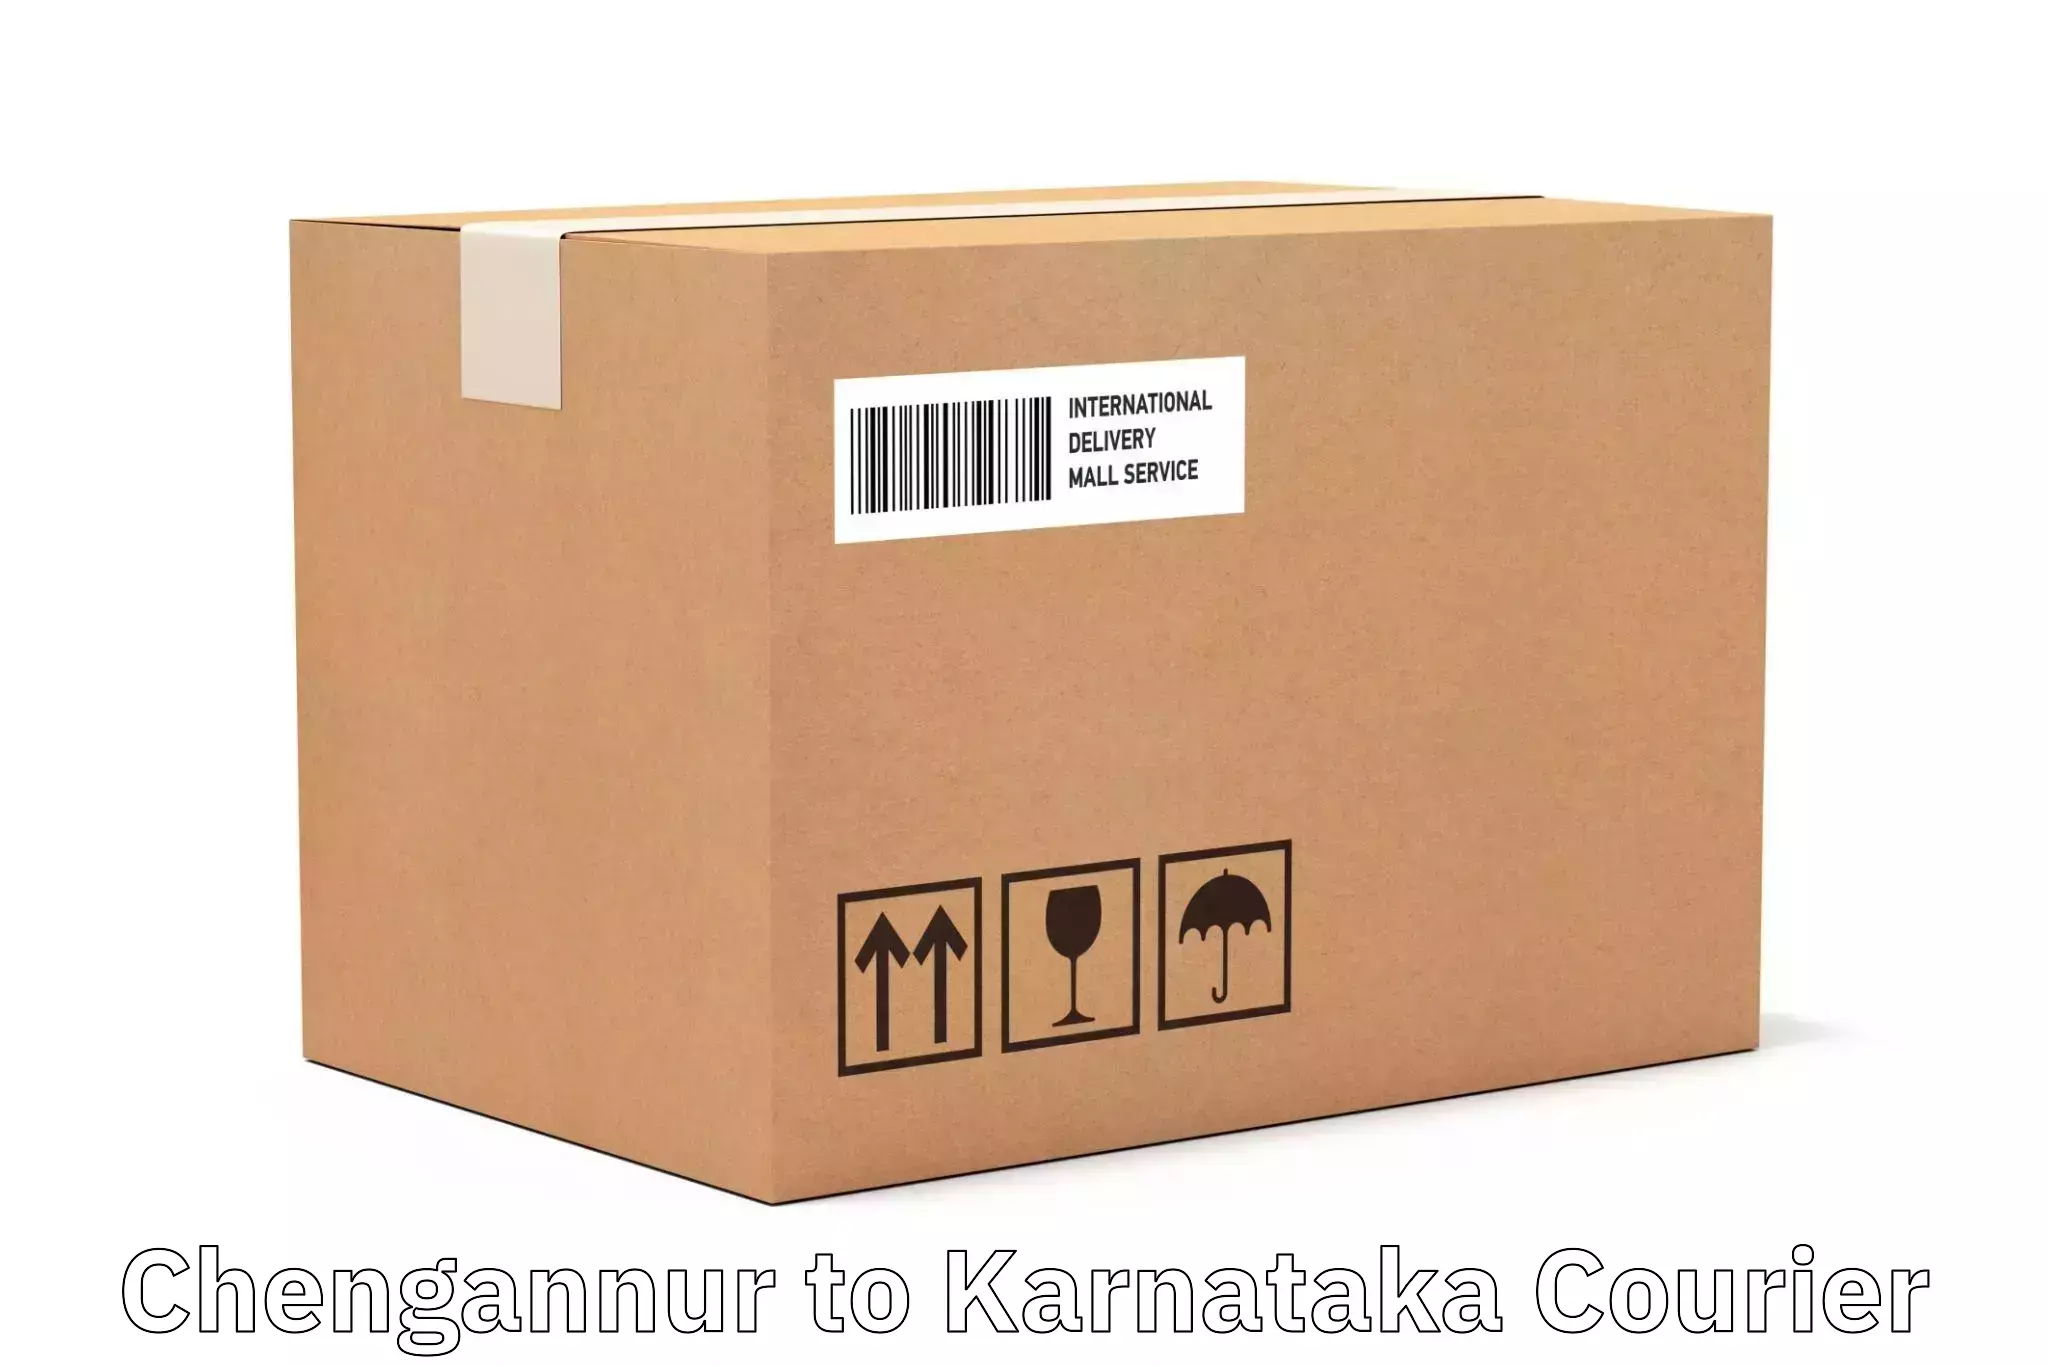 Professional courier handling Chengannur to Kundapura